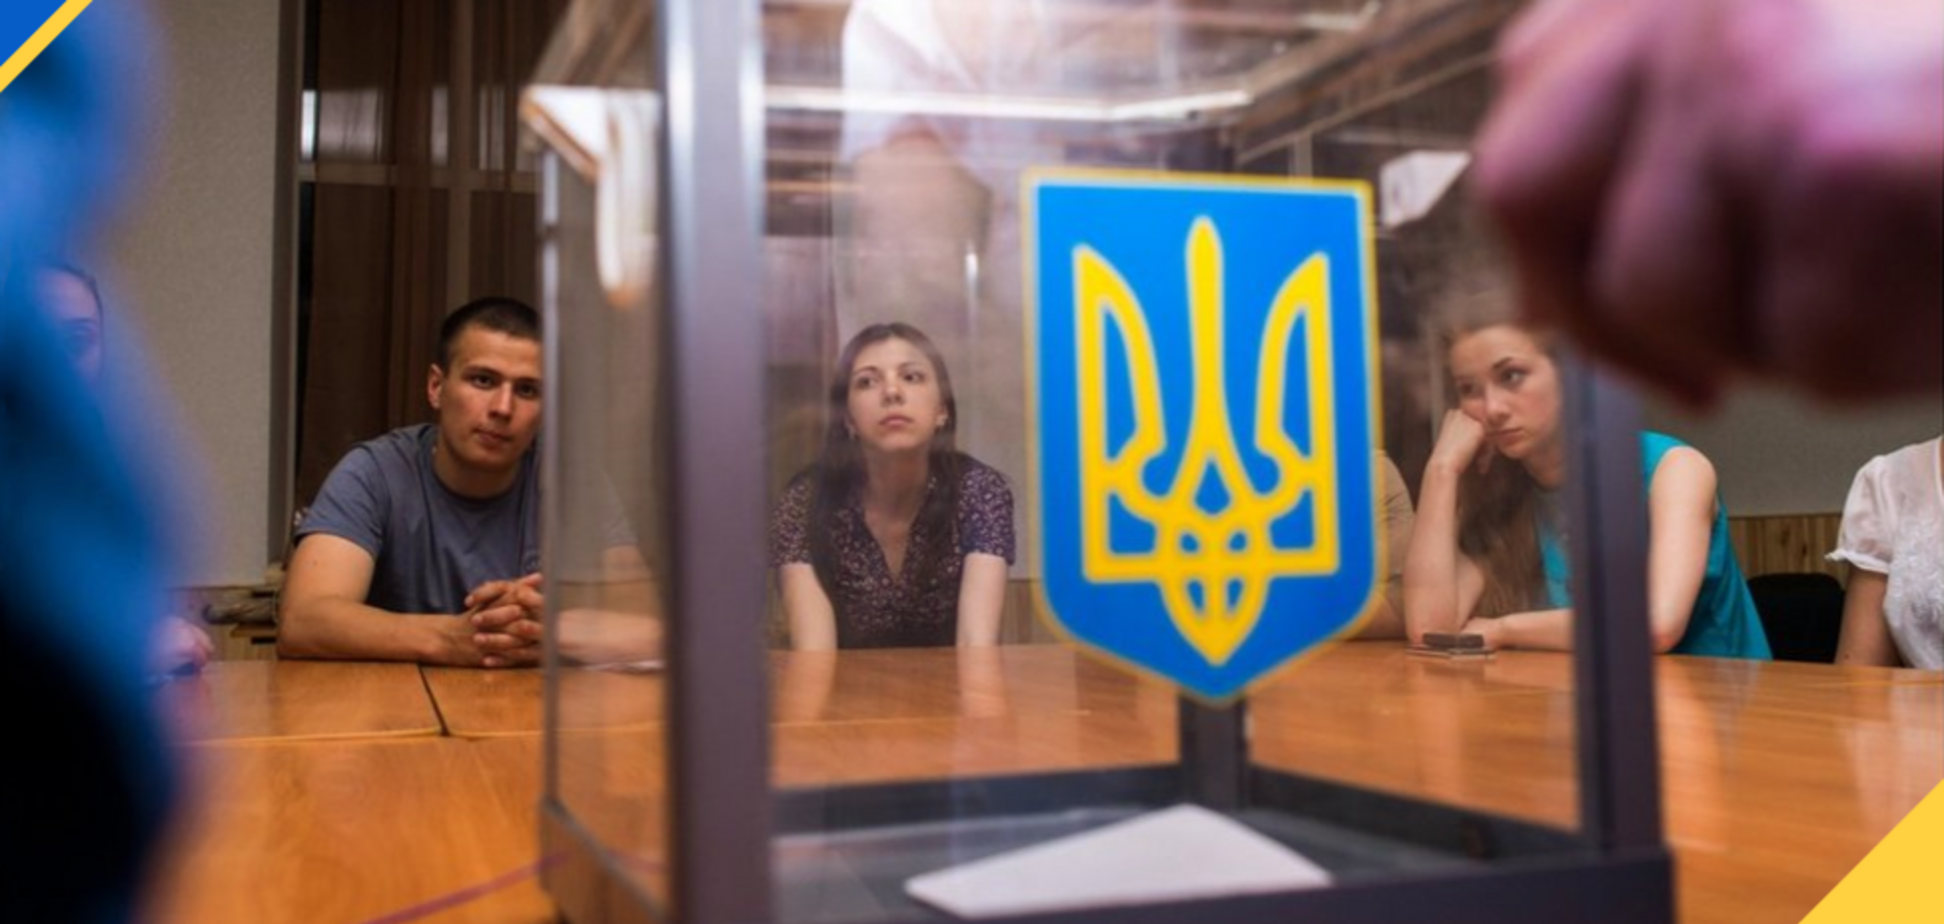 Зламали урни і оскандалились: що відбувається на виборчих дільницях в Україні